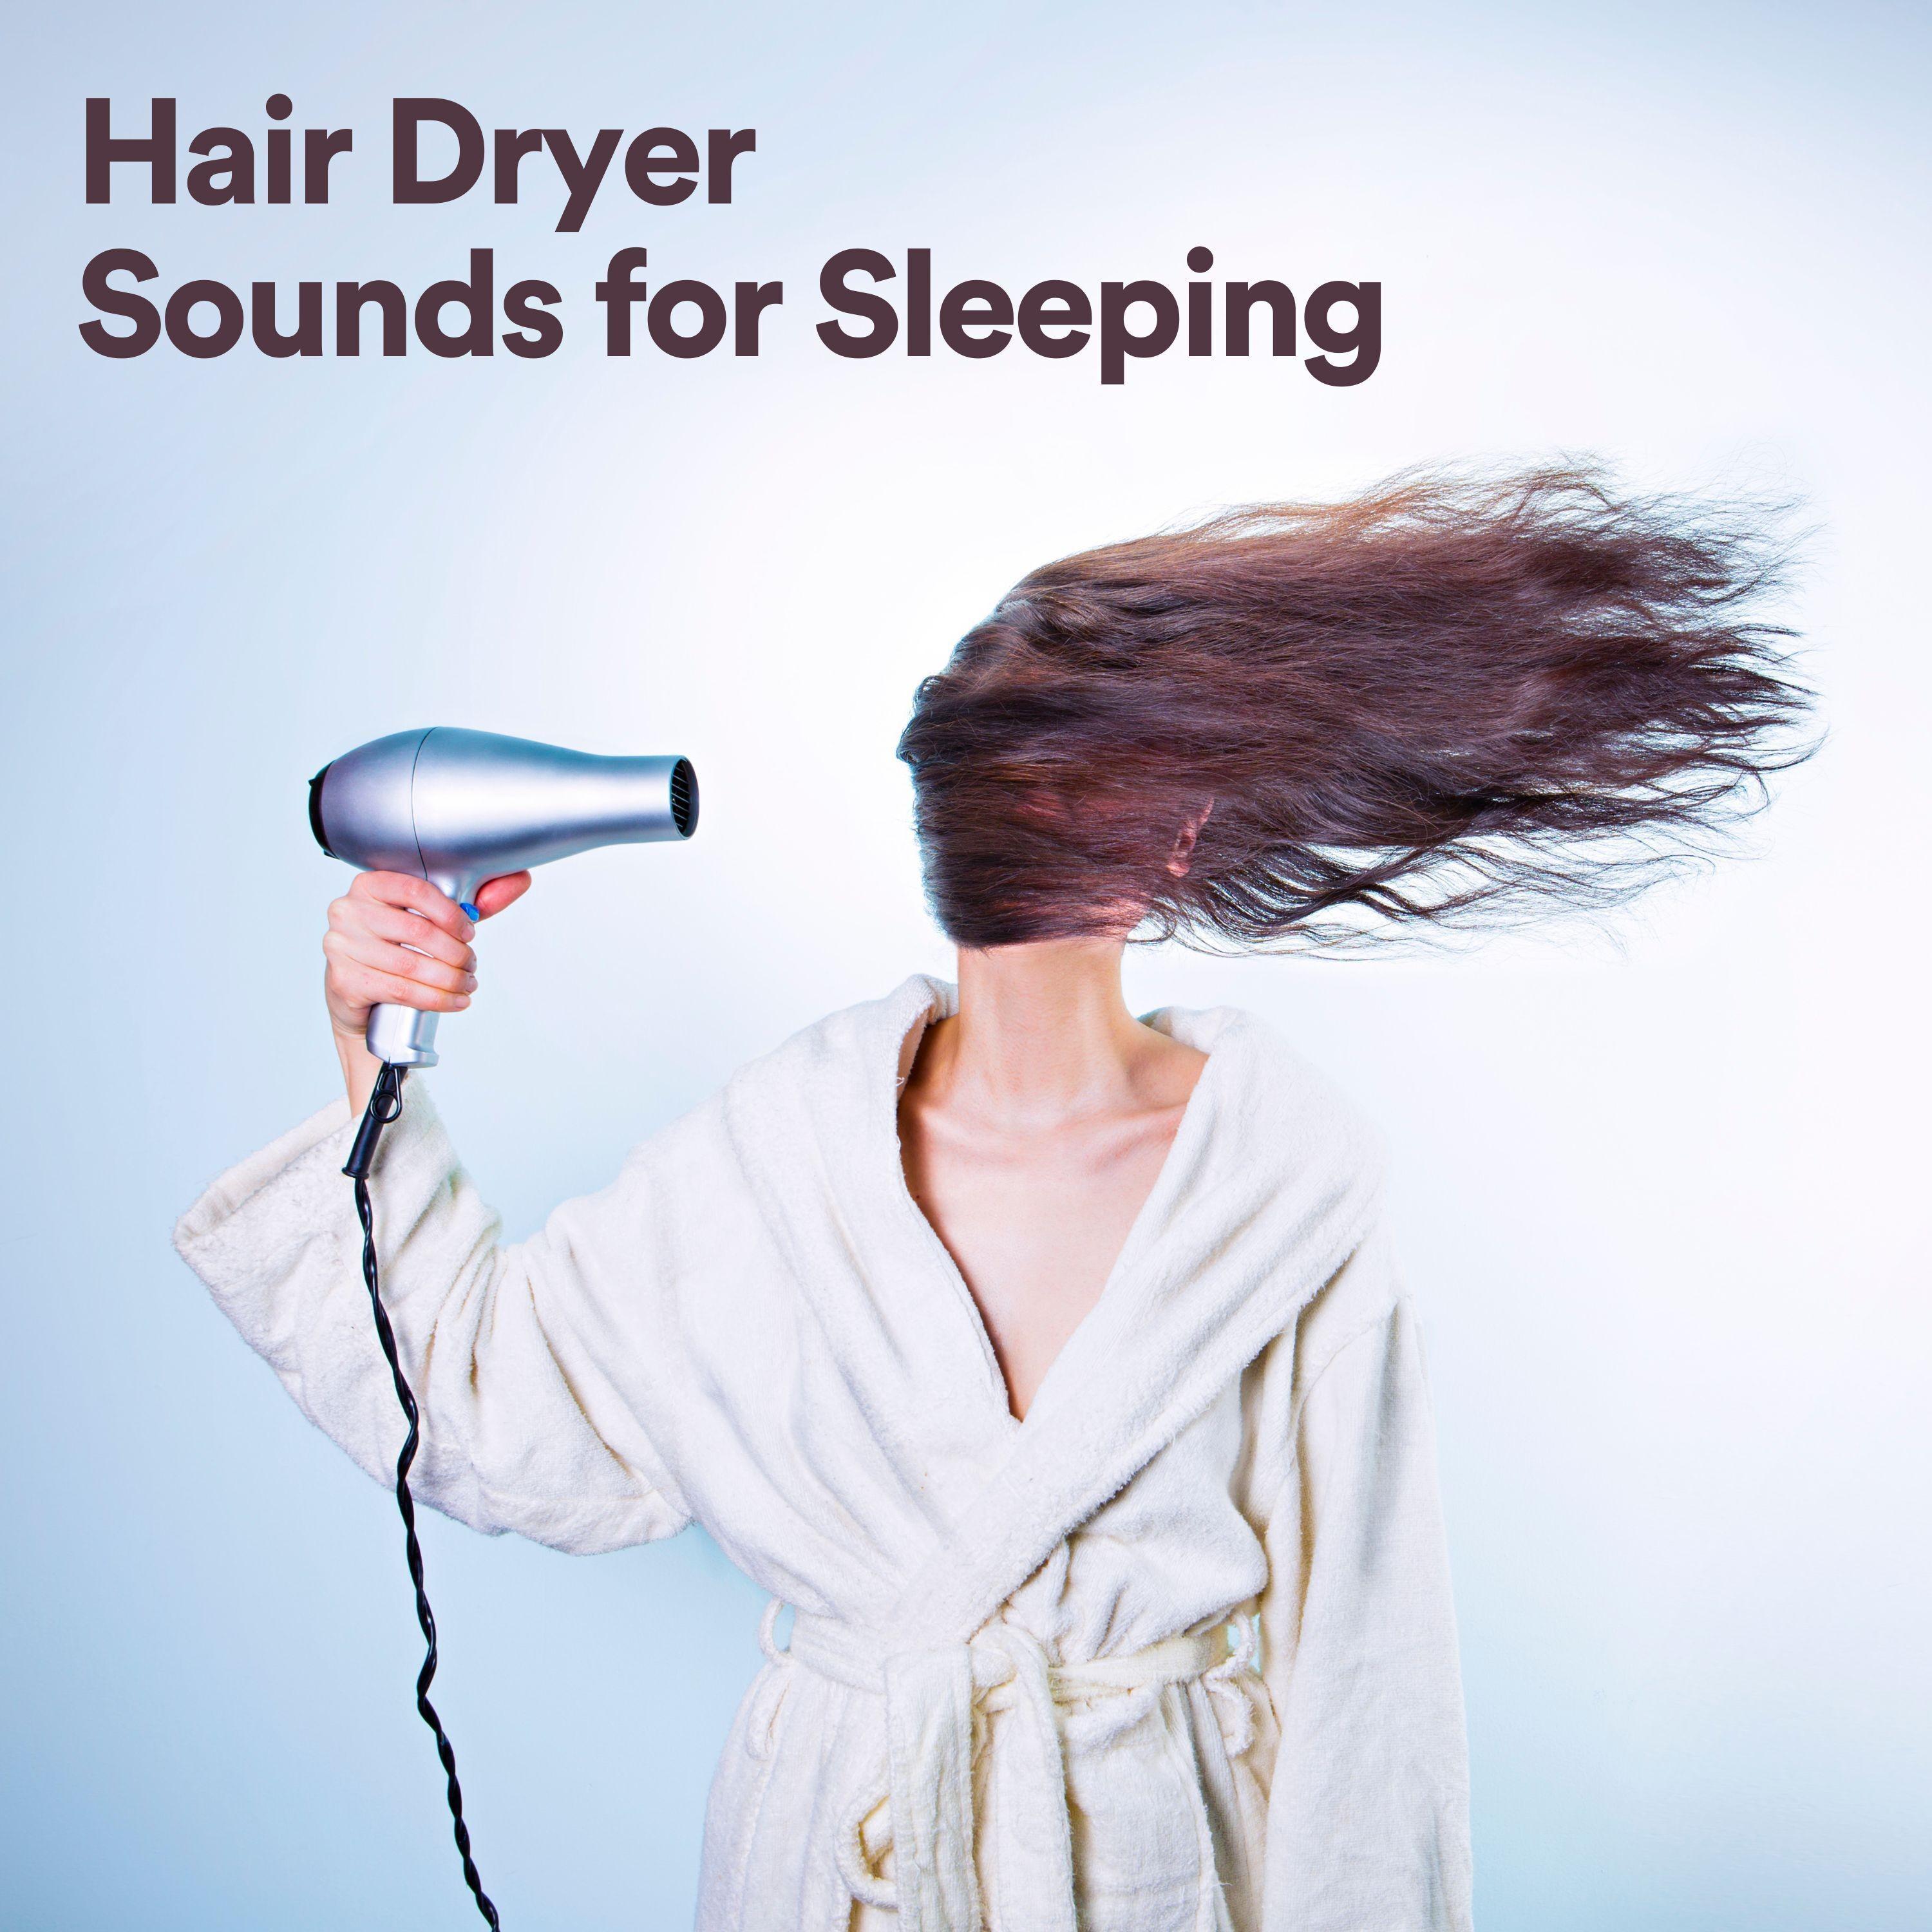 Deep Sleep Hair Dryers - Drying Your Hair Sounds